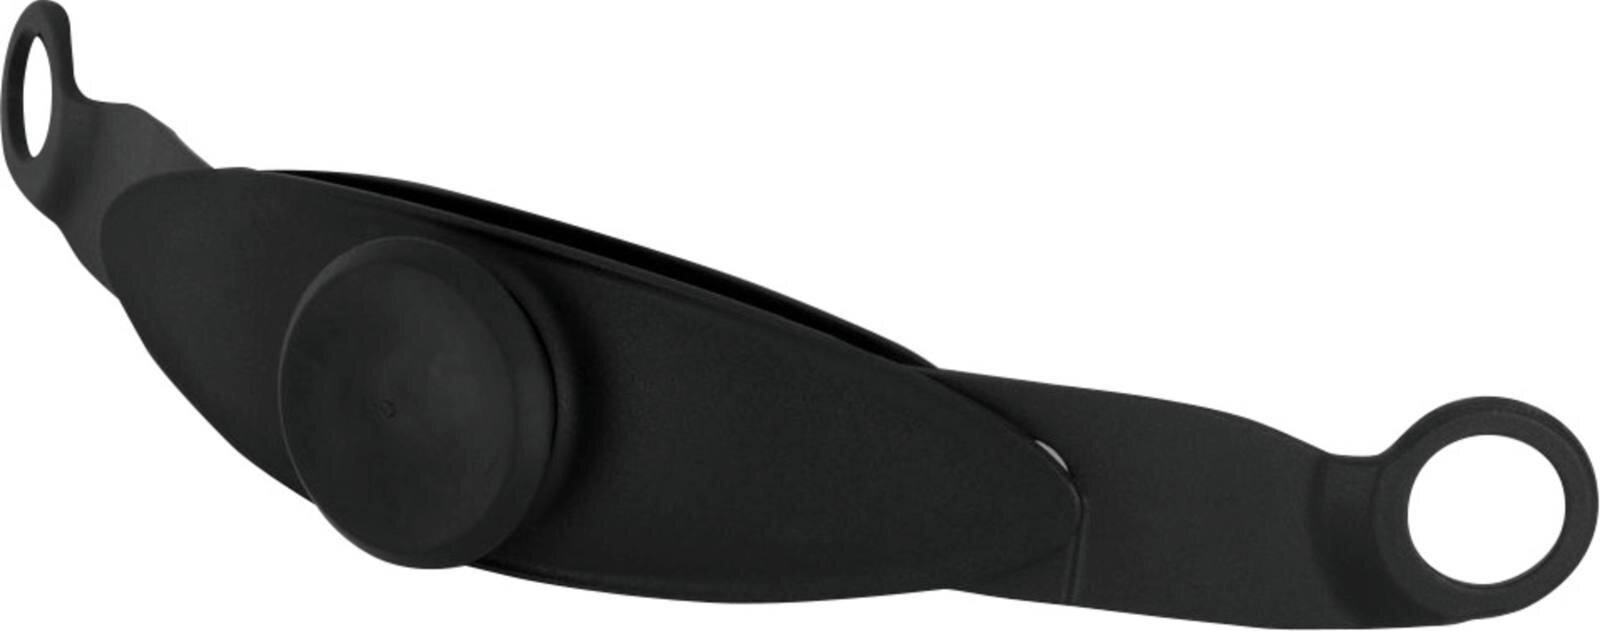 3M Speedglas Einstellband / Ratschensystem für Kopfband #536200